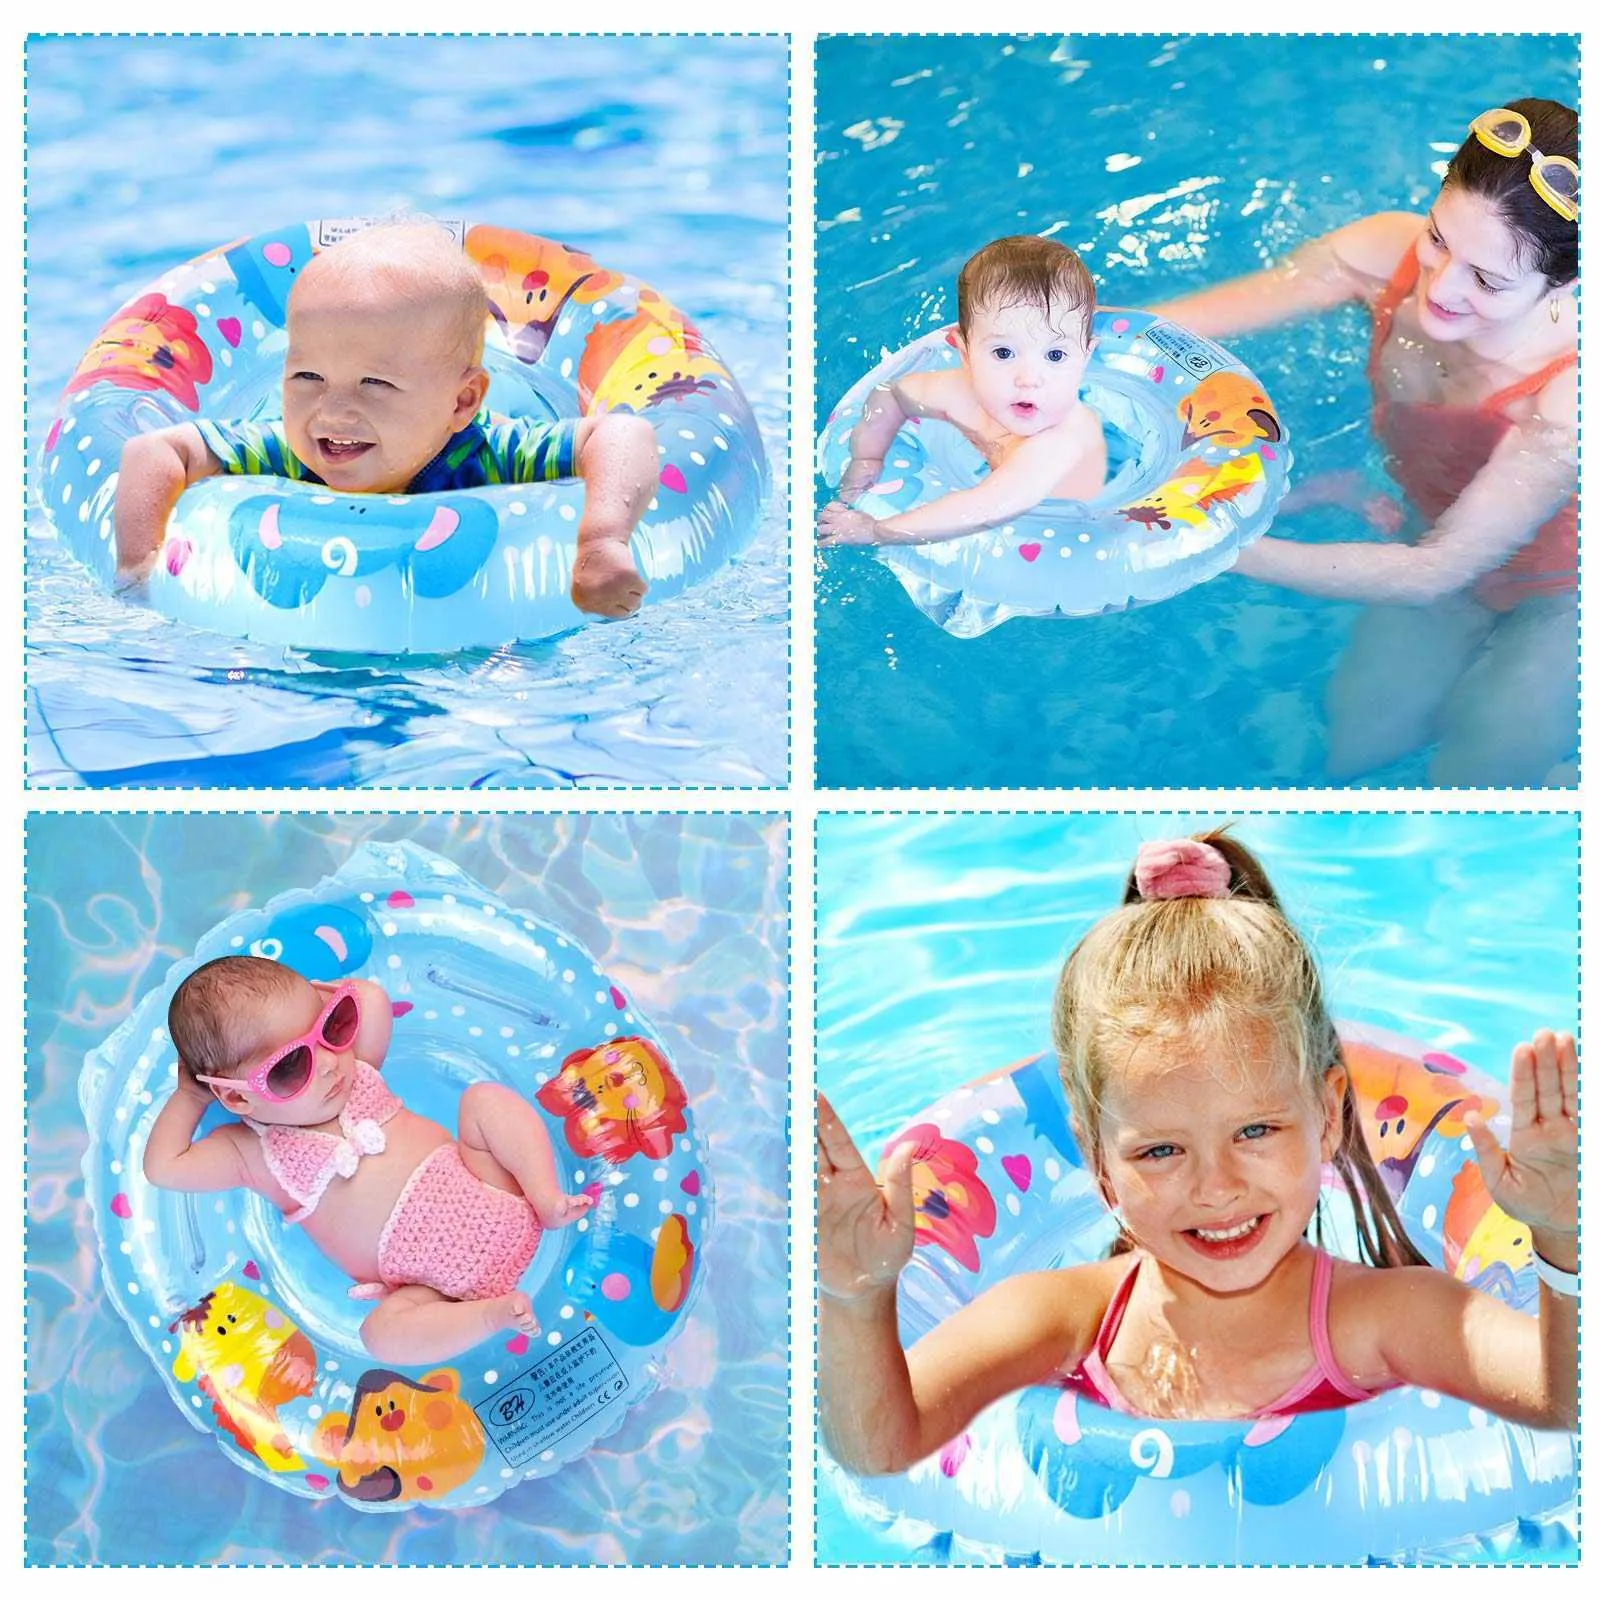 Tubos de flutuadores infláveis, assento de bebê fofo flutuando com anel de alça dupla adequado para a piscina de criança banheira p230519 bom legal